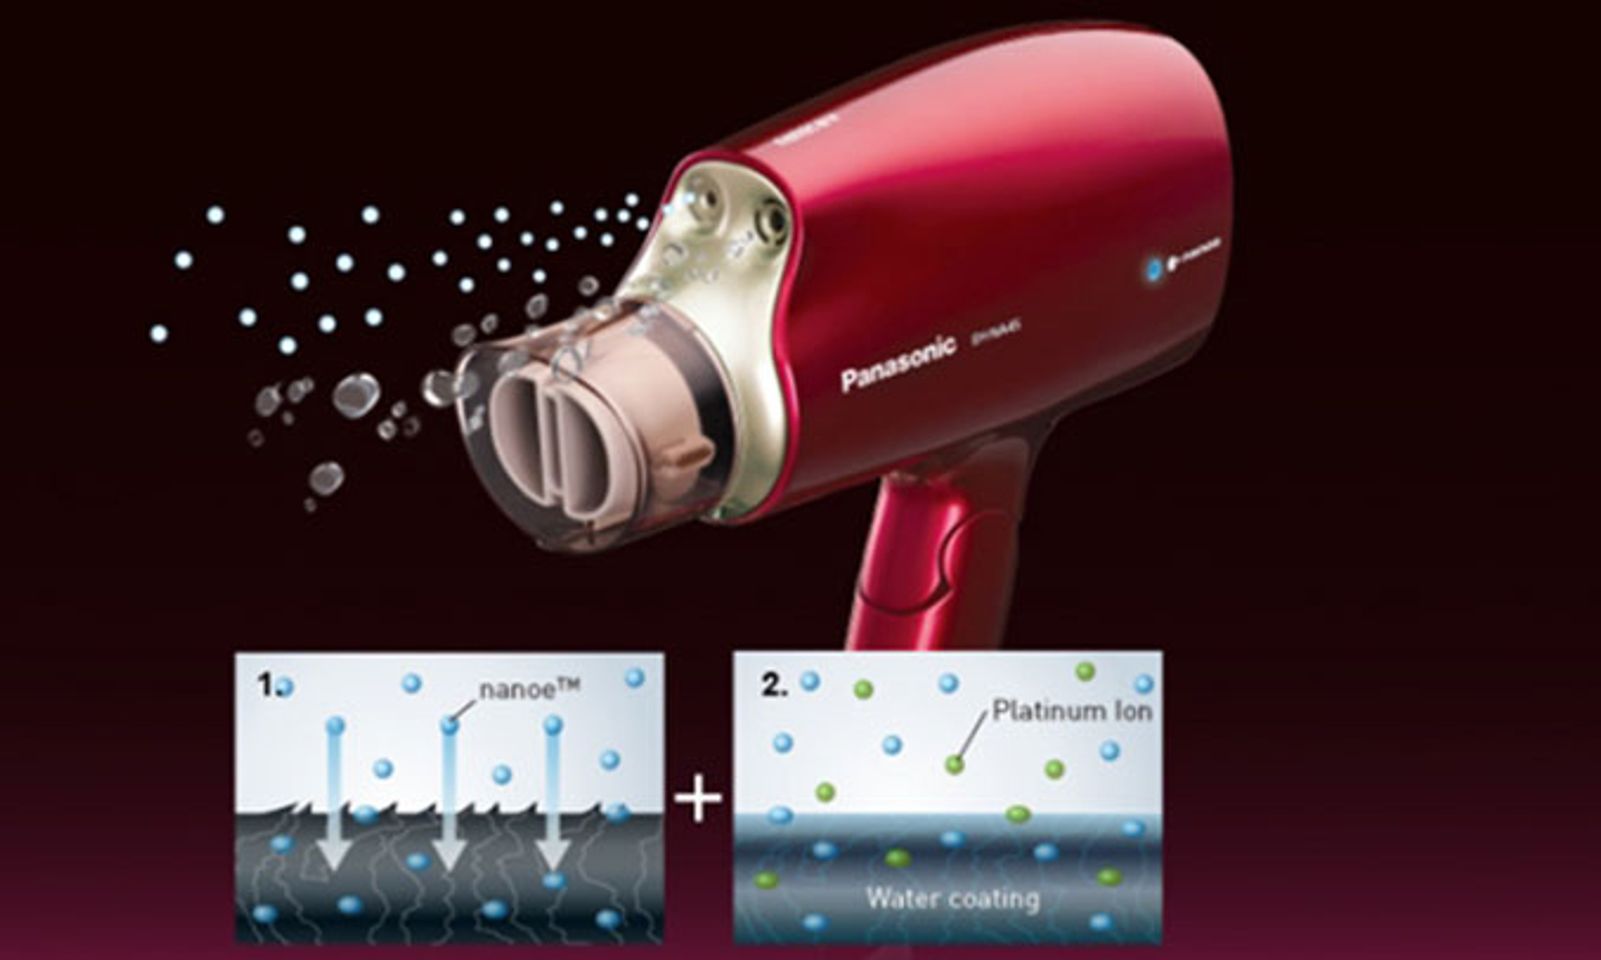 Máy sấy tóc Panasonic EH-NA45RP645 chính hãng với công nghệ nanoe ion tạo độ ẩm và bảo vệ tóc khỏe hơn